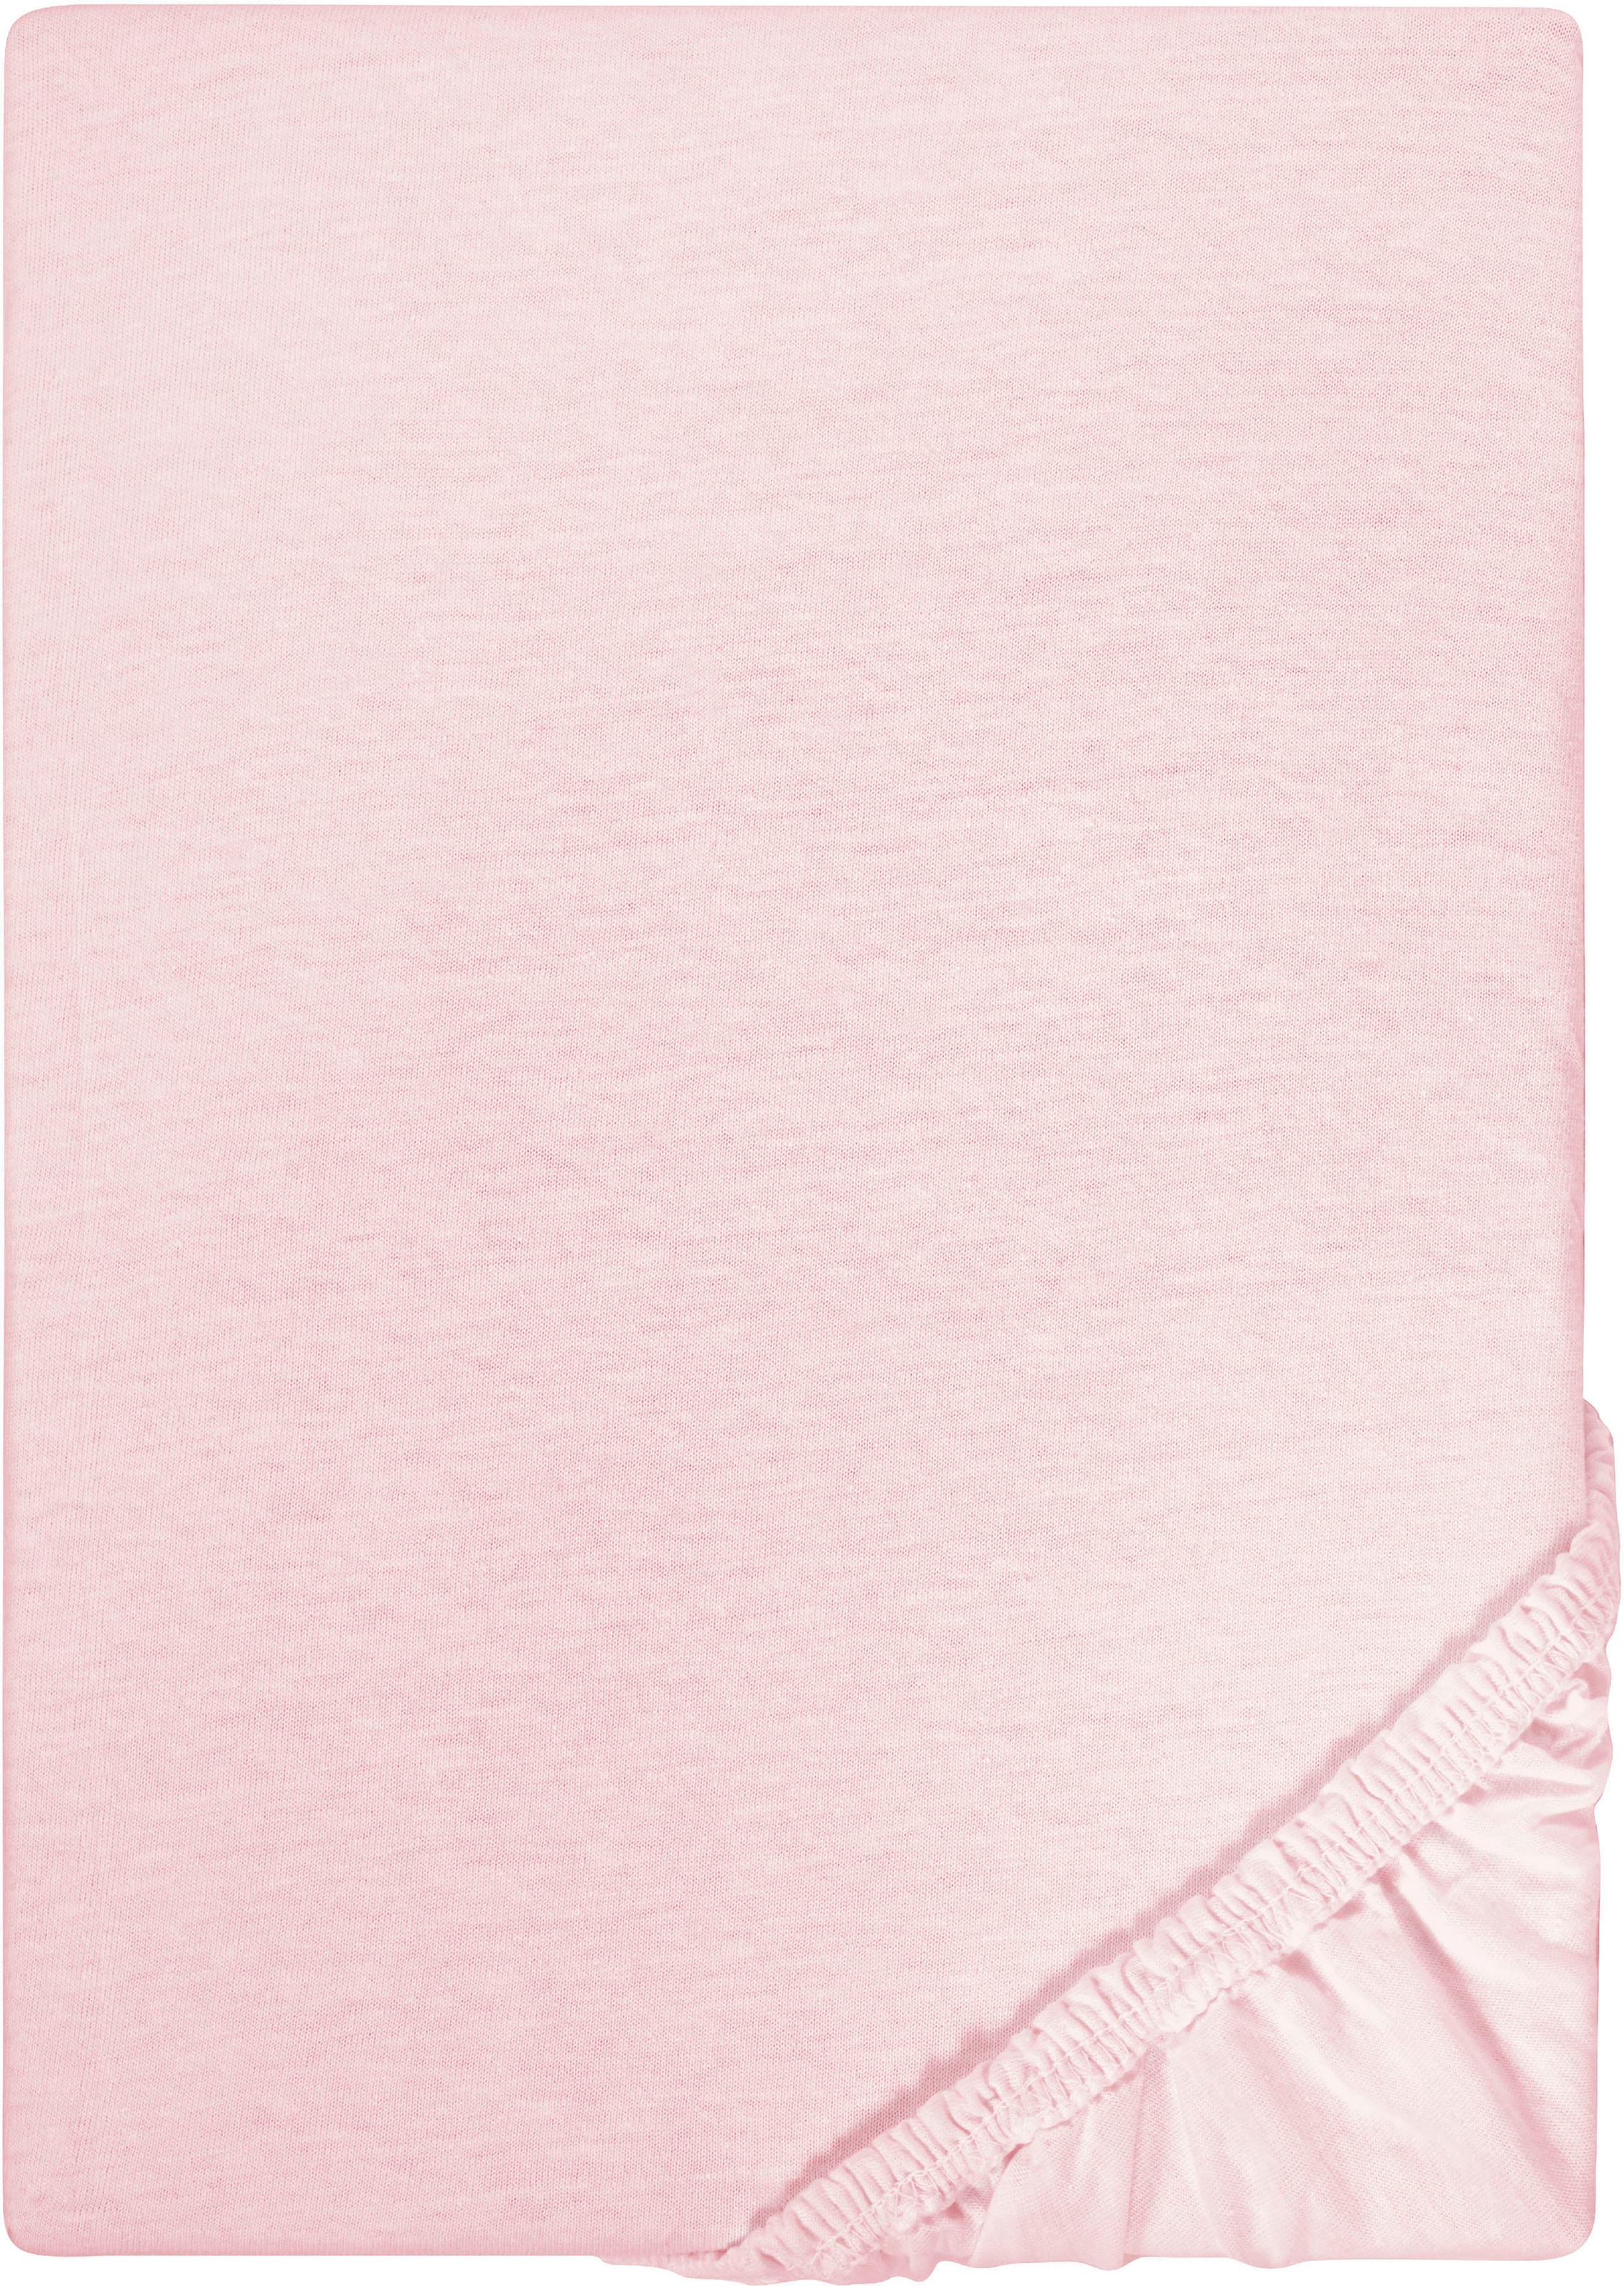 Biberna Spannbettlaken »Leila Jersey, Spannbetttuch in Gr. 90x200, 180x200 oder 200x200 cm«, Bettlaken aus 100% Baumwolle, für Matratzenhöhen bis 22 cm